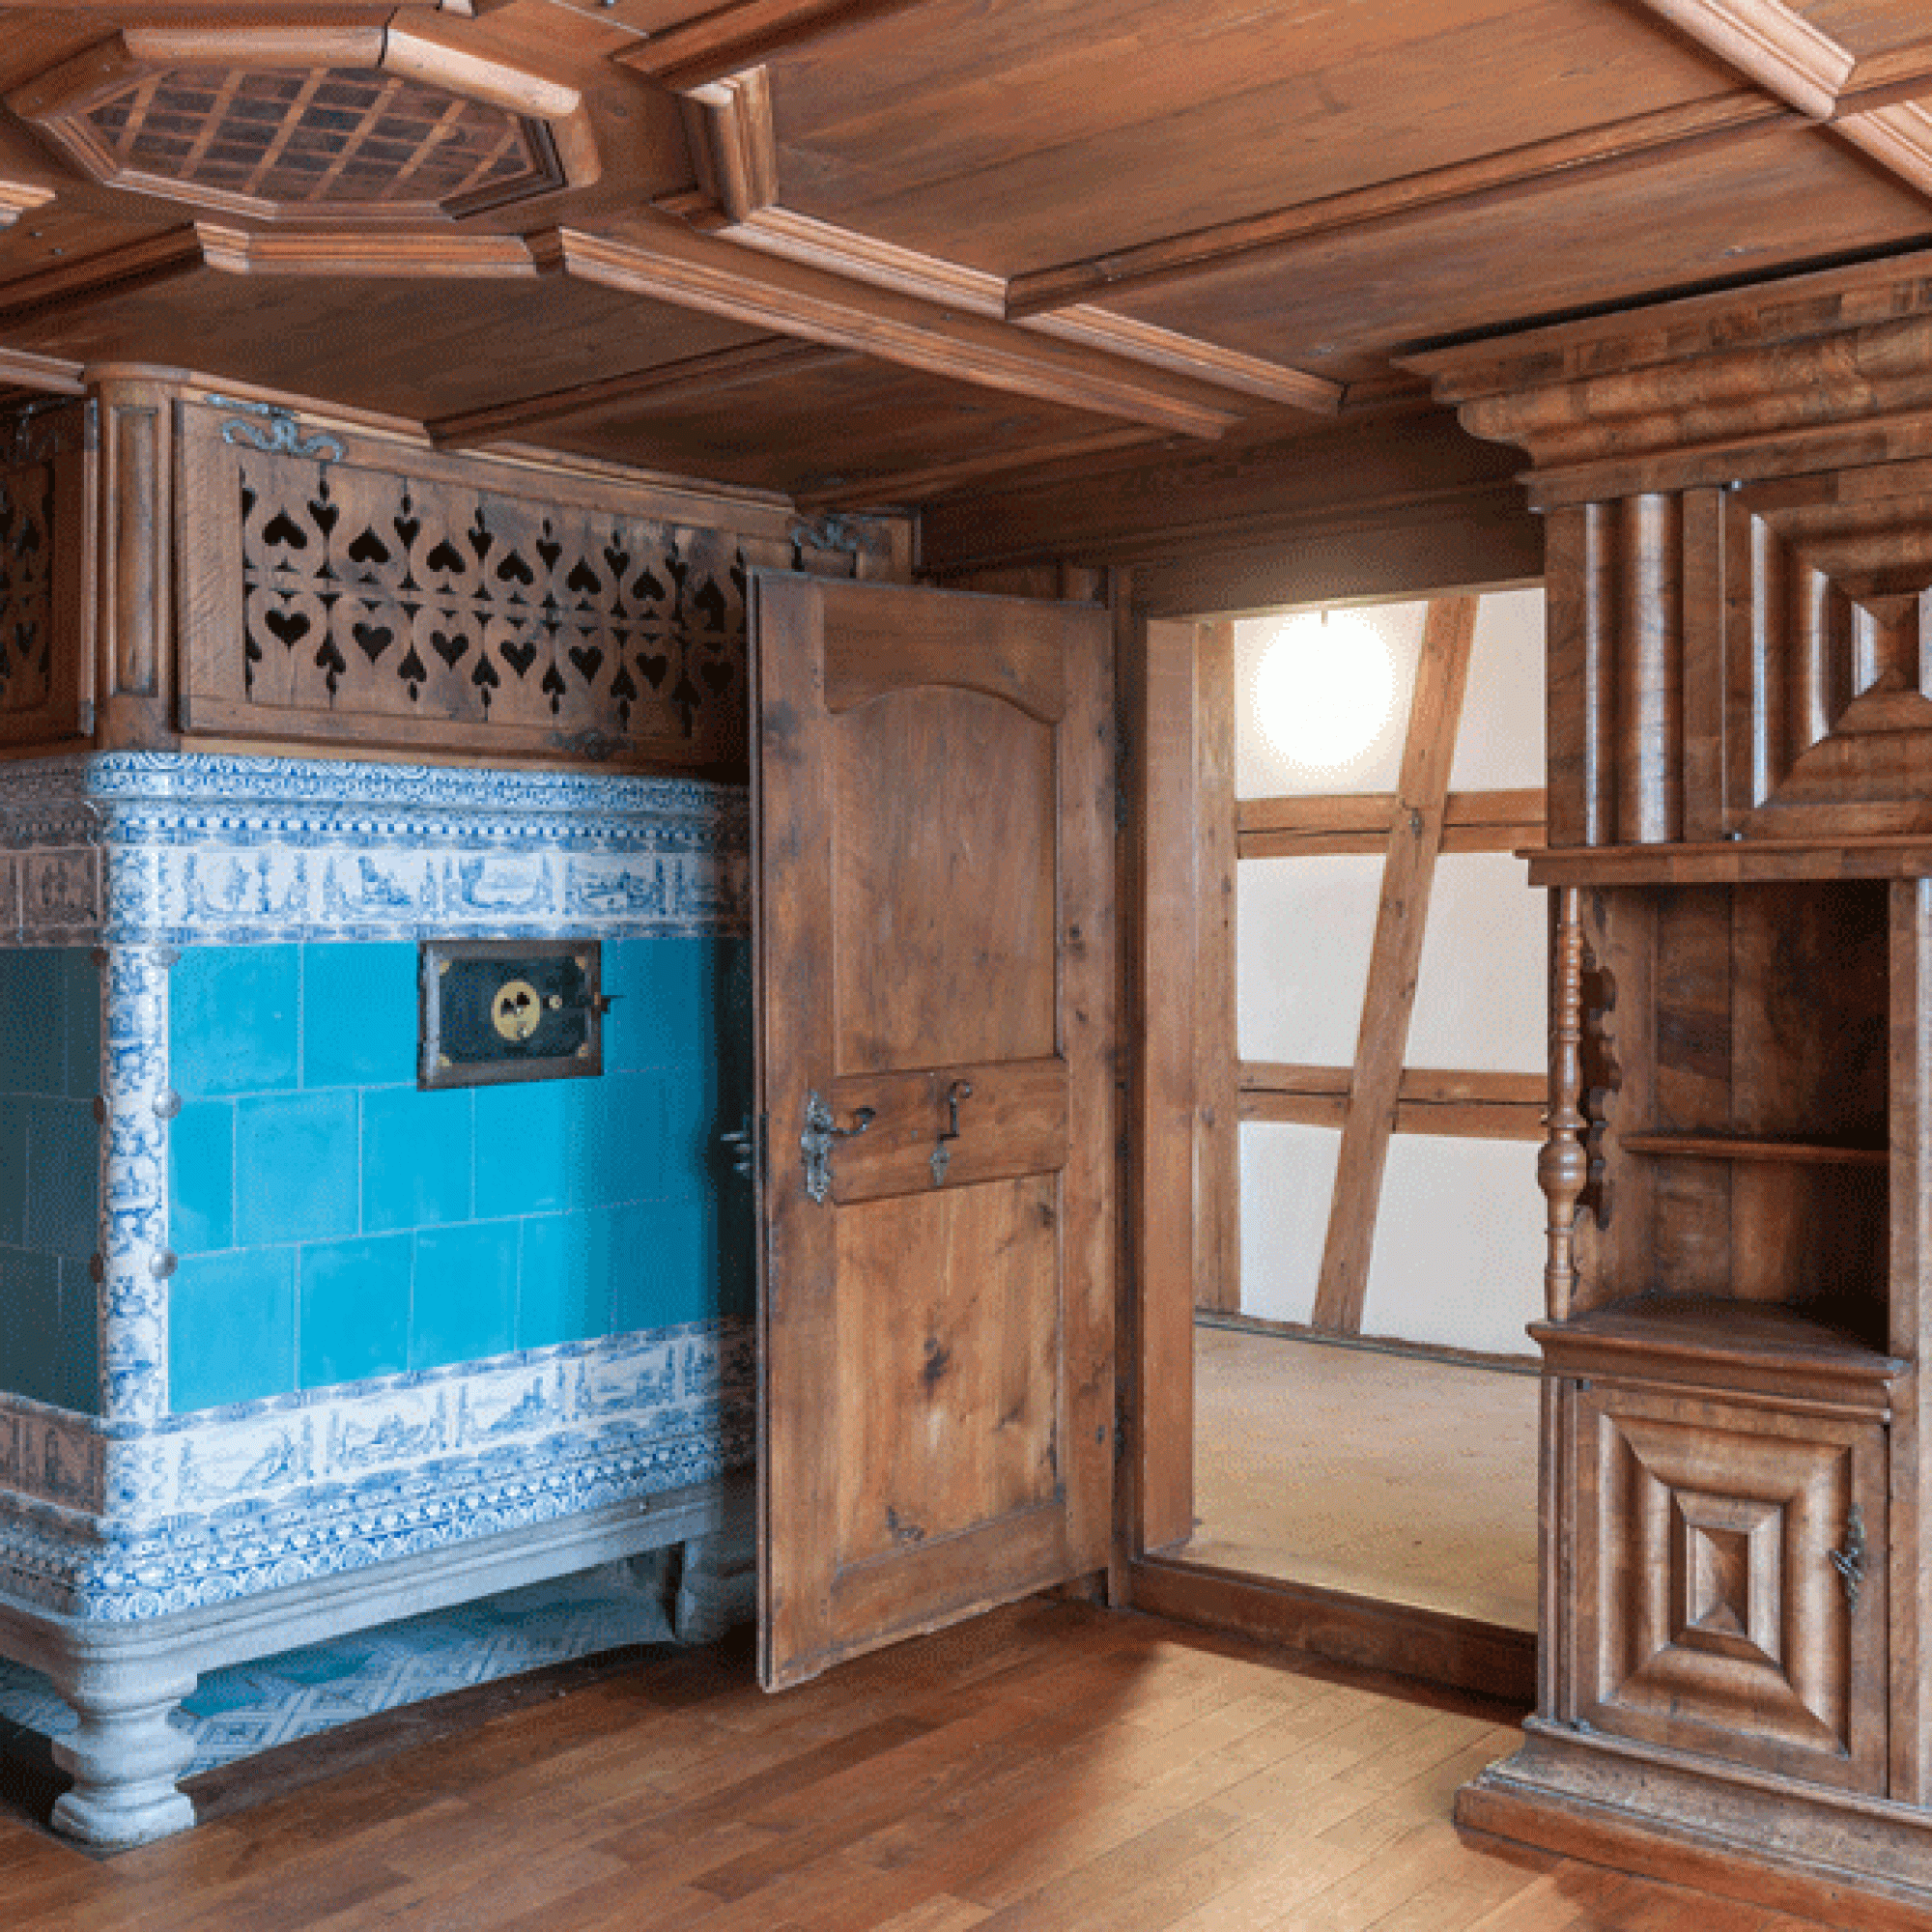 Innen wurde das Menzihaus nur sanft renoviert, mit einem der beiden Kachelöfen weiterhin auf traditionellen Weise geheizt. (zvg)